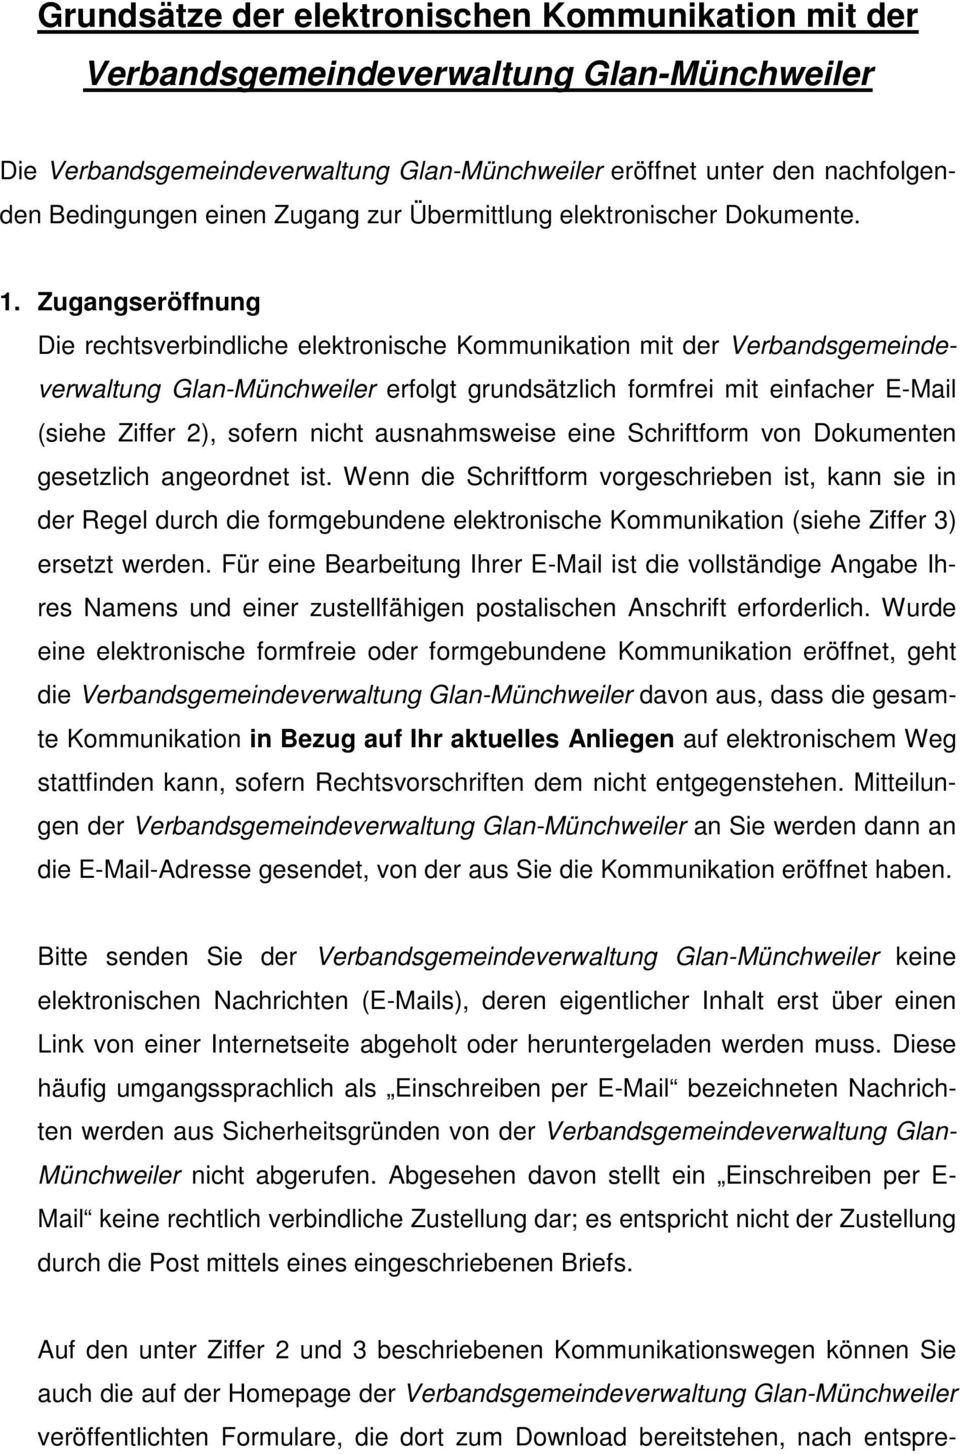 Zugangseröffnung Die rechtsverbindliche elektronische Kommunikation mit der Verbandsgemeindeverwaltung Glan-Münchweiler erfolgt grundsätzlich formfrei mit einfacher E-Mail (siehe Ziffer 2), sofern